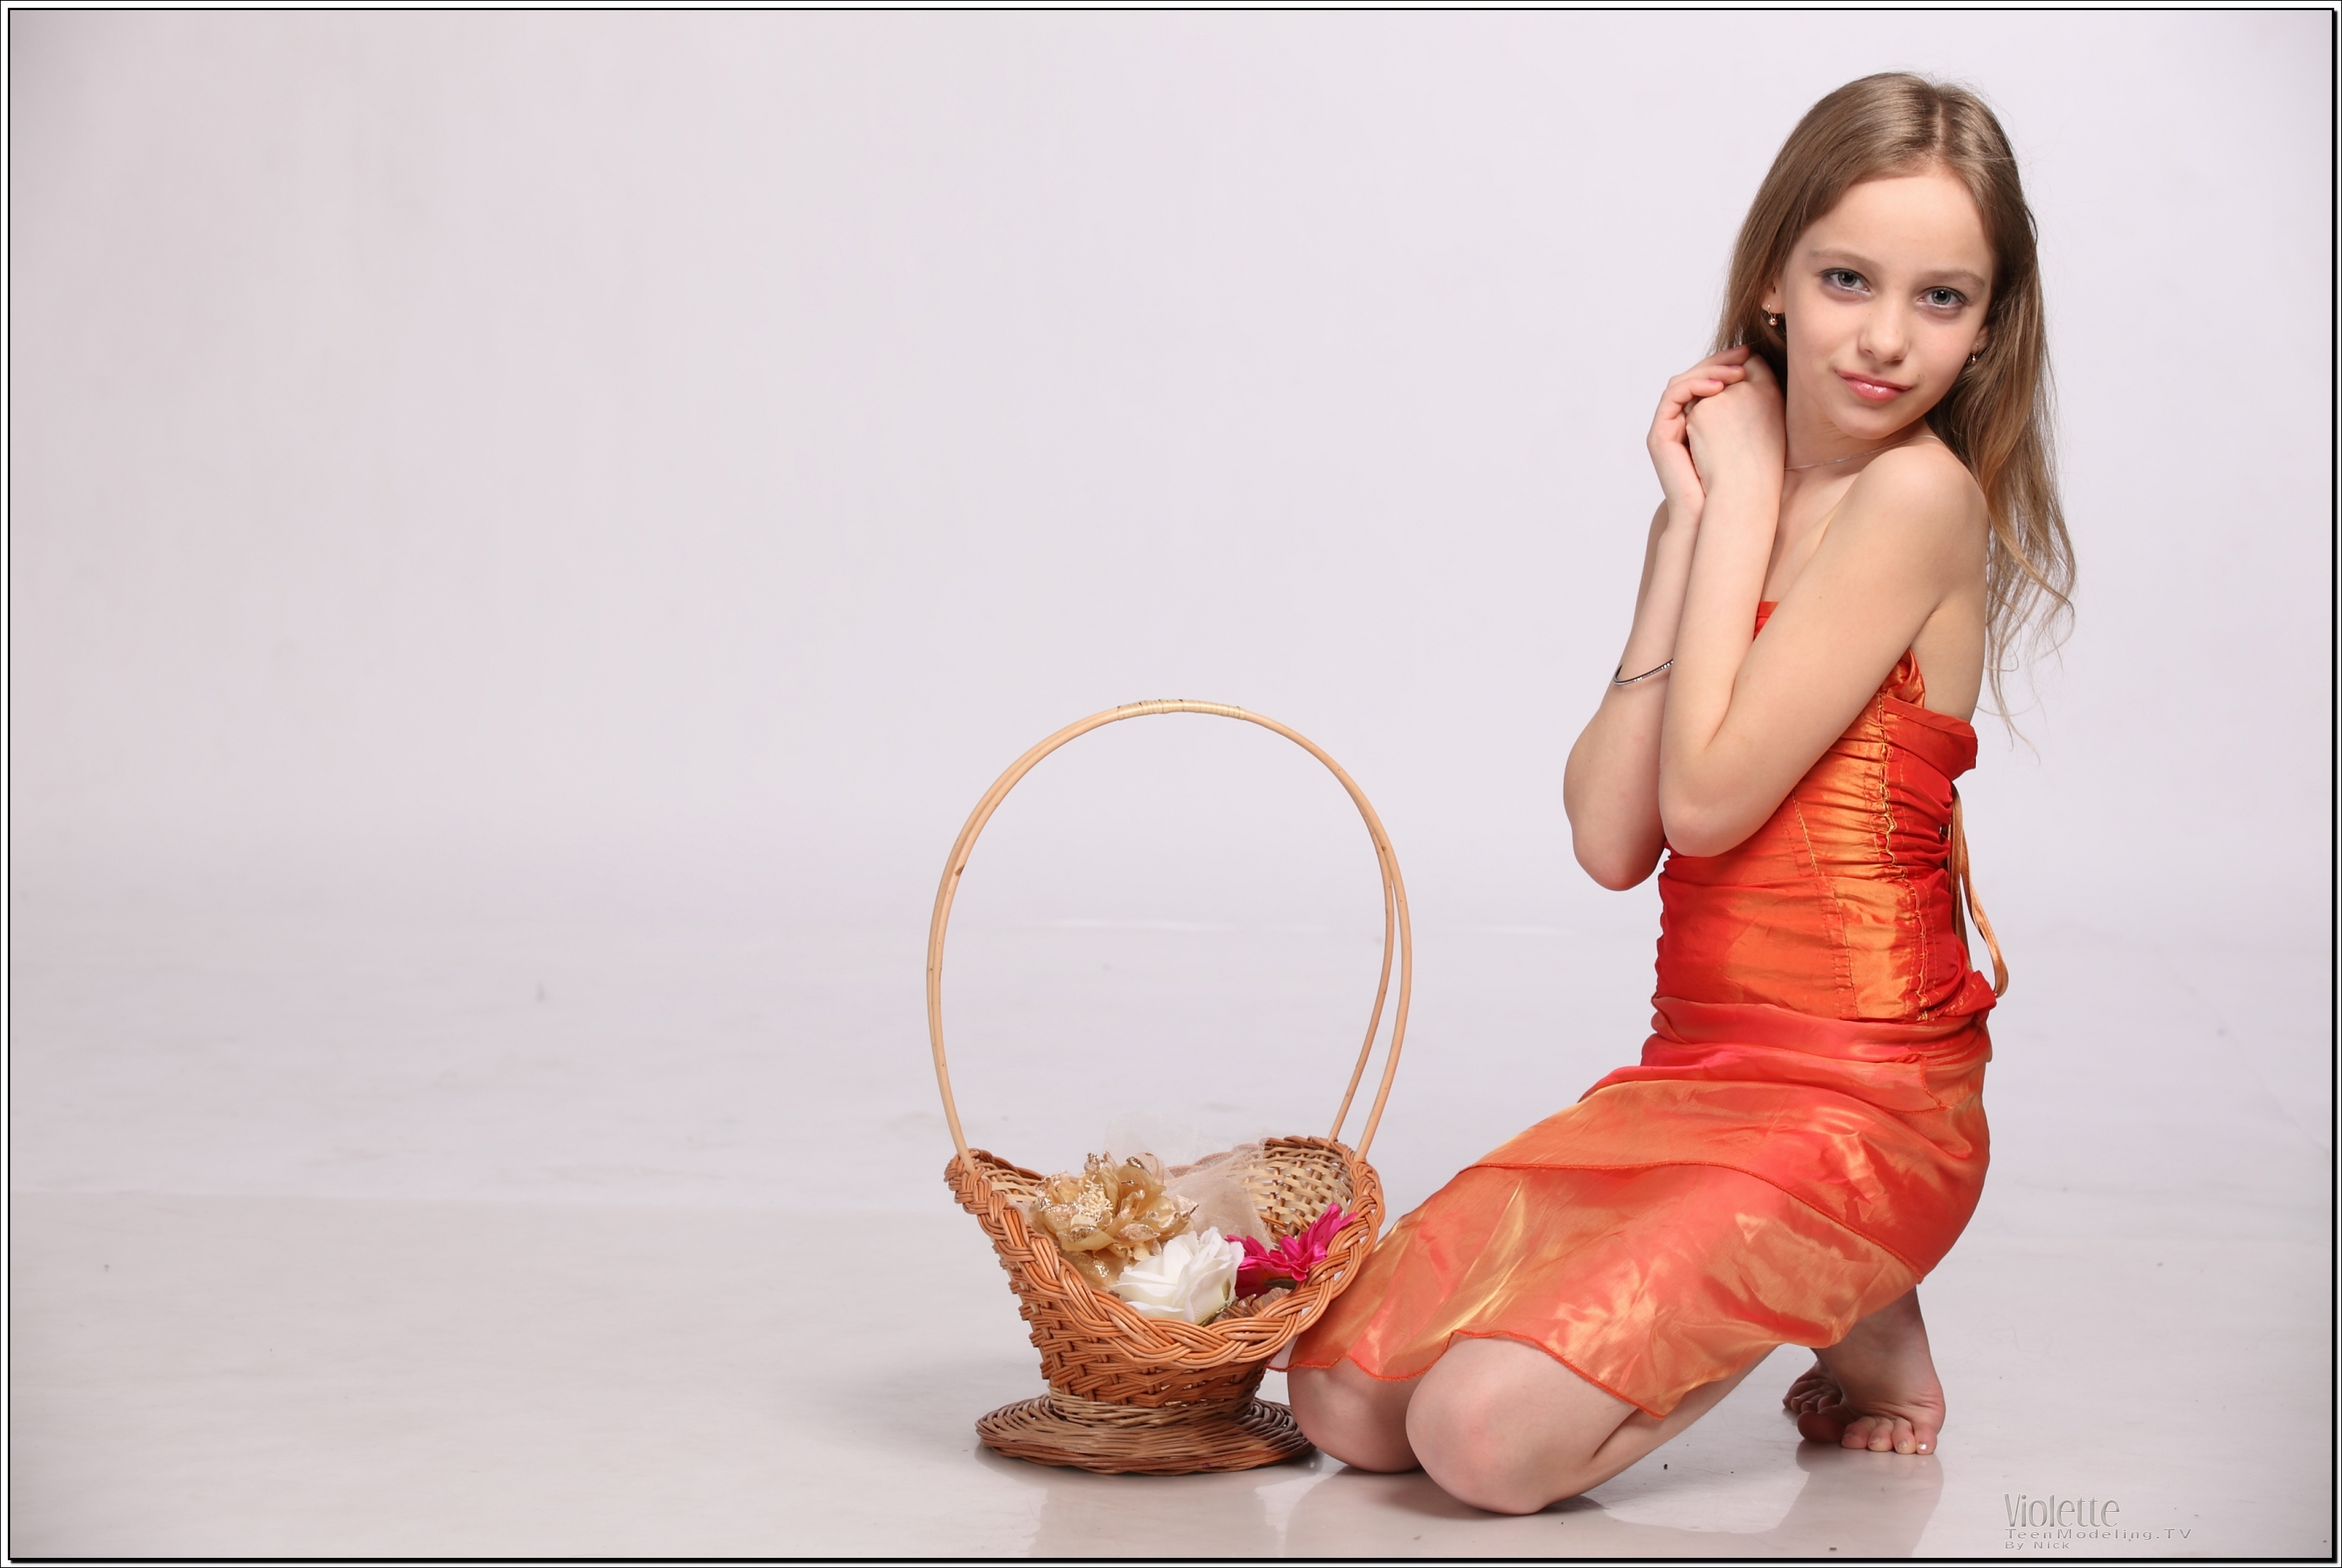 violette_model_orangesheer_teenmodeling_tv_066.jpg